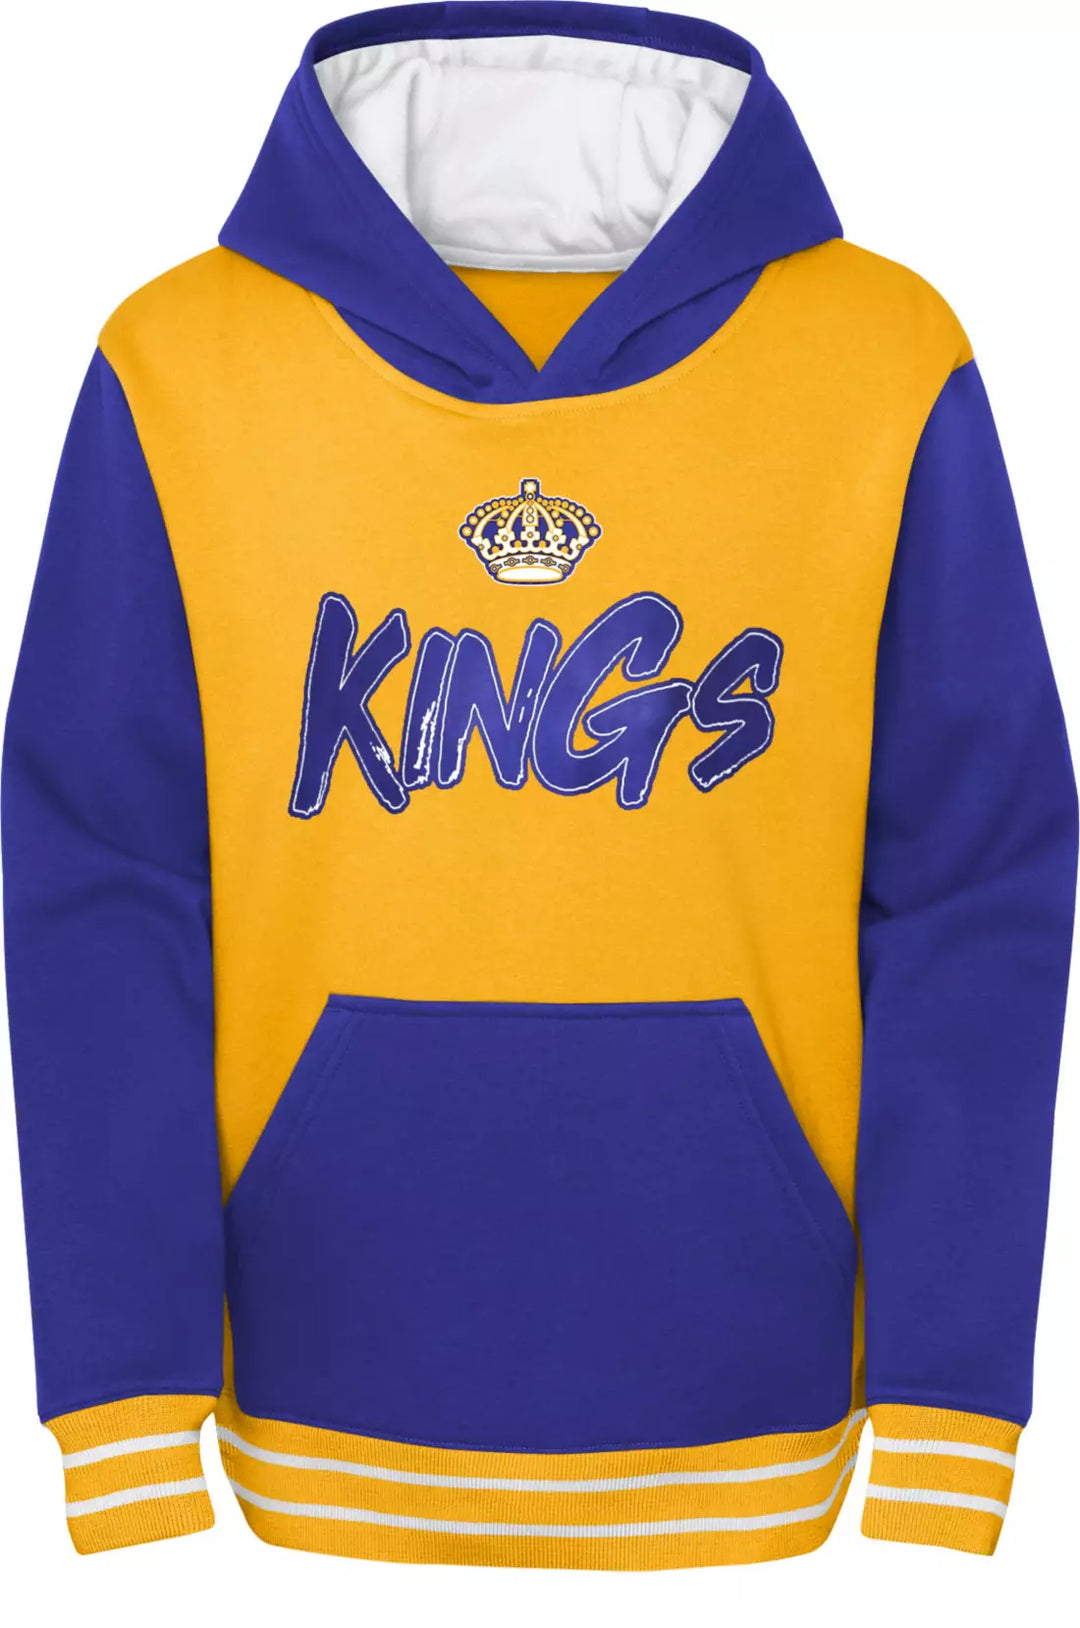 la kings youth jersey